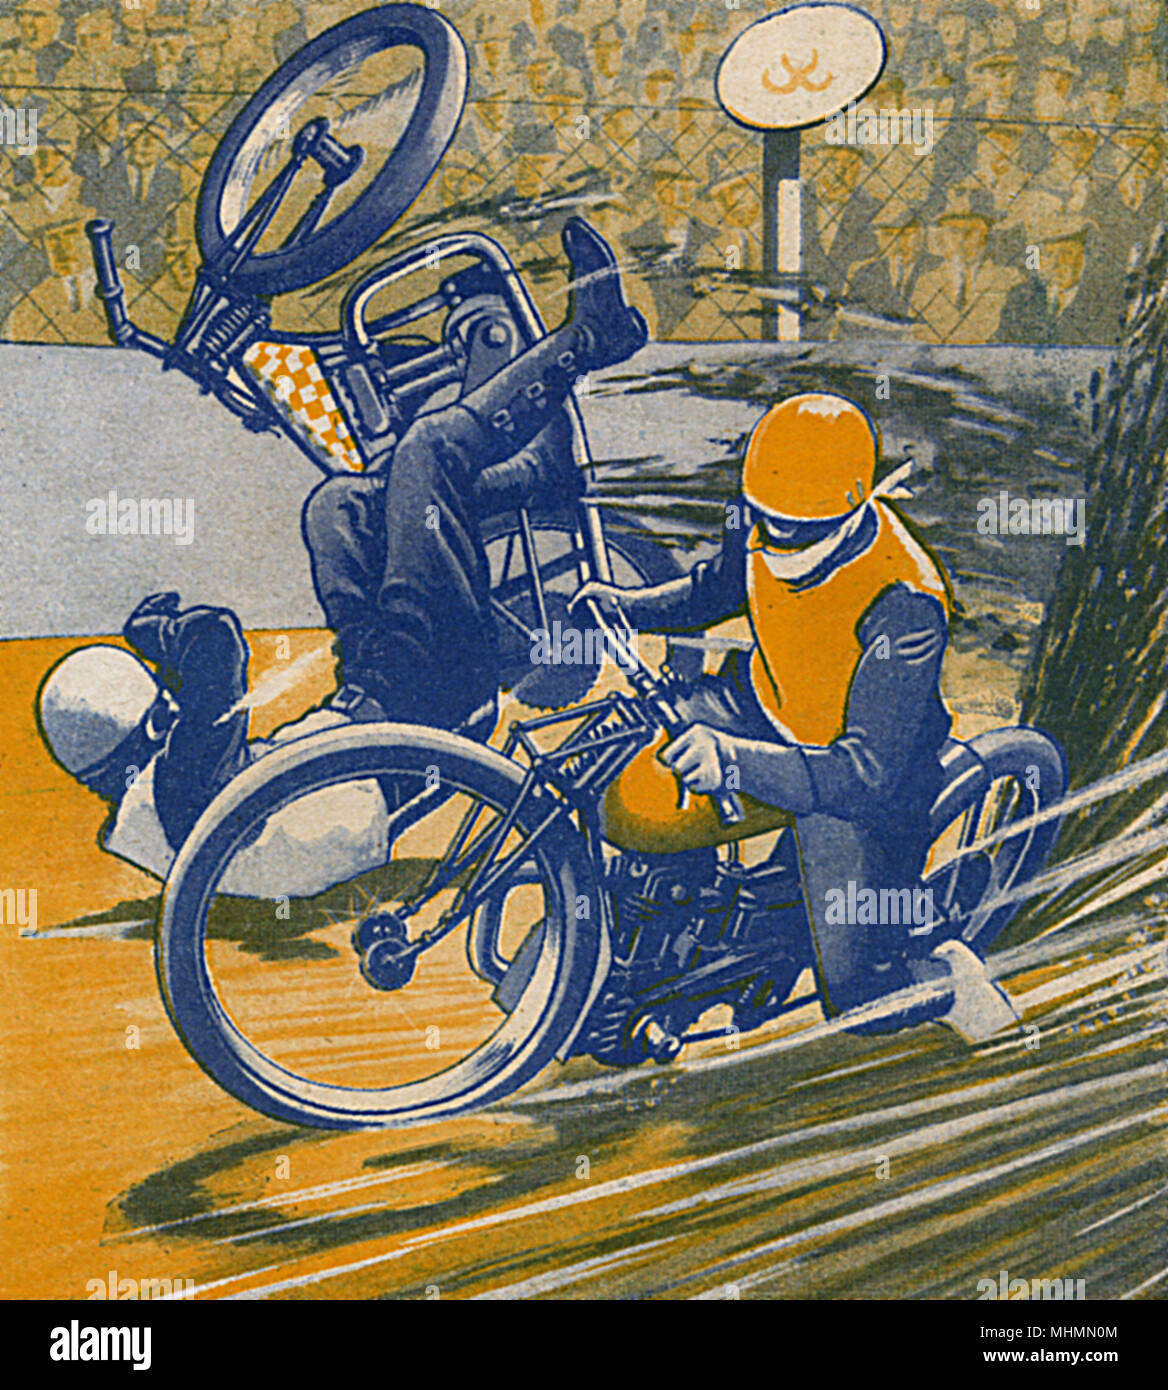 Les amateurs de monstres sur roues ! Une course de moto dans lequel un concurrent dérapages et vole dans l'air. Date : 1933 Banque D'Images